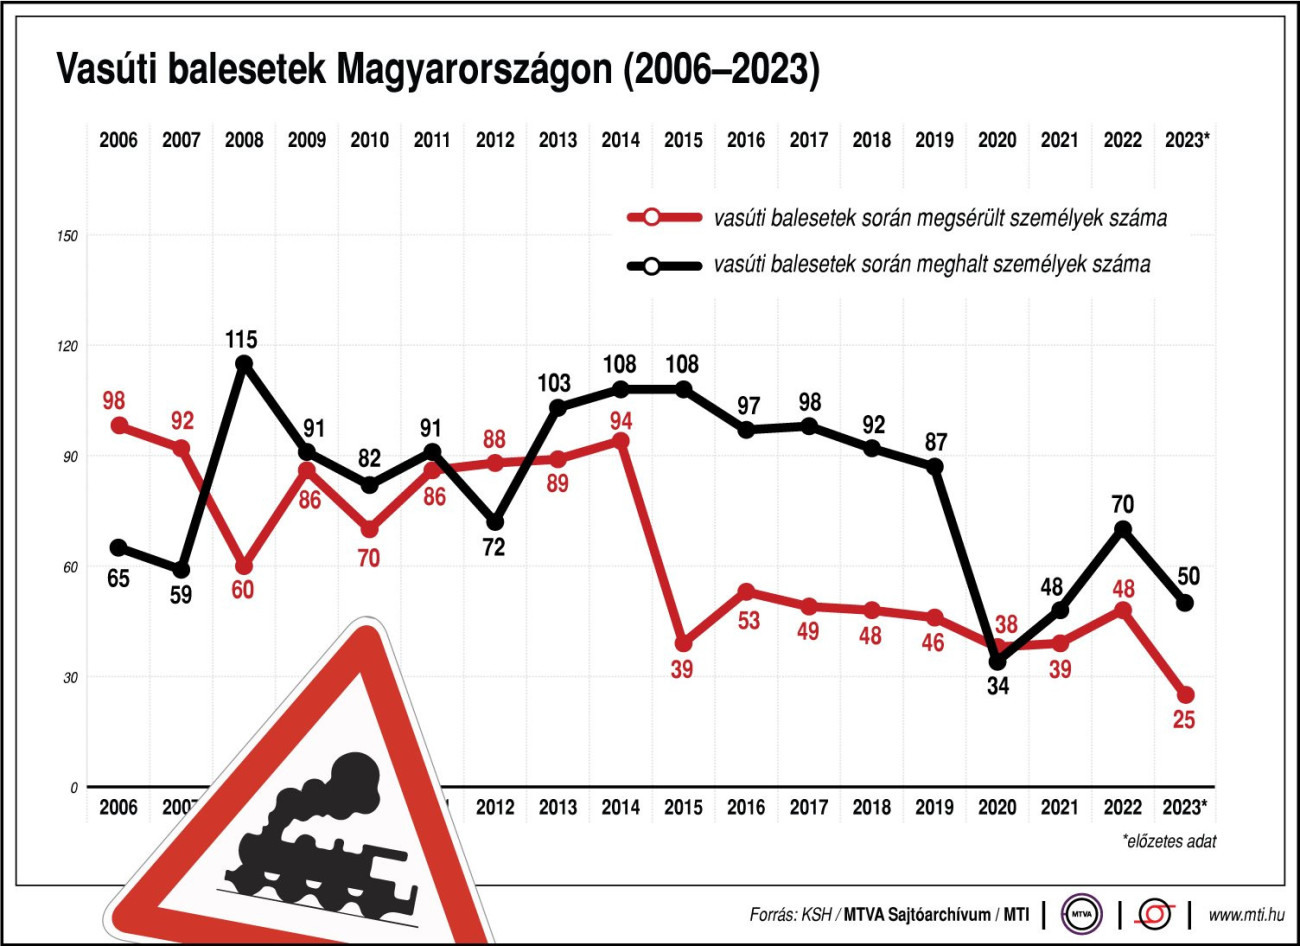 Vasúti balesetek Magyarországon, 2006-2023
Vasúti balesetek során megsérült személyek száma;
vasúti balesetek során meghalt személyek száma
20240516:MTI:G0299